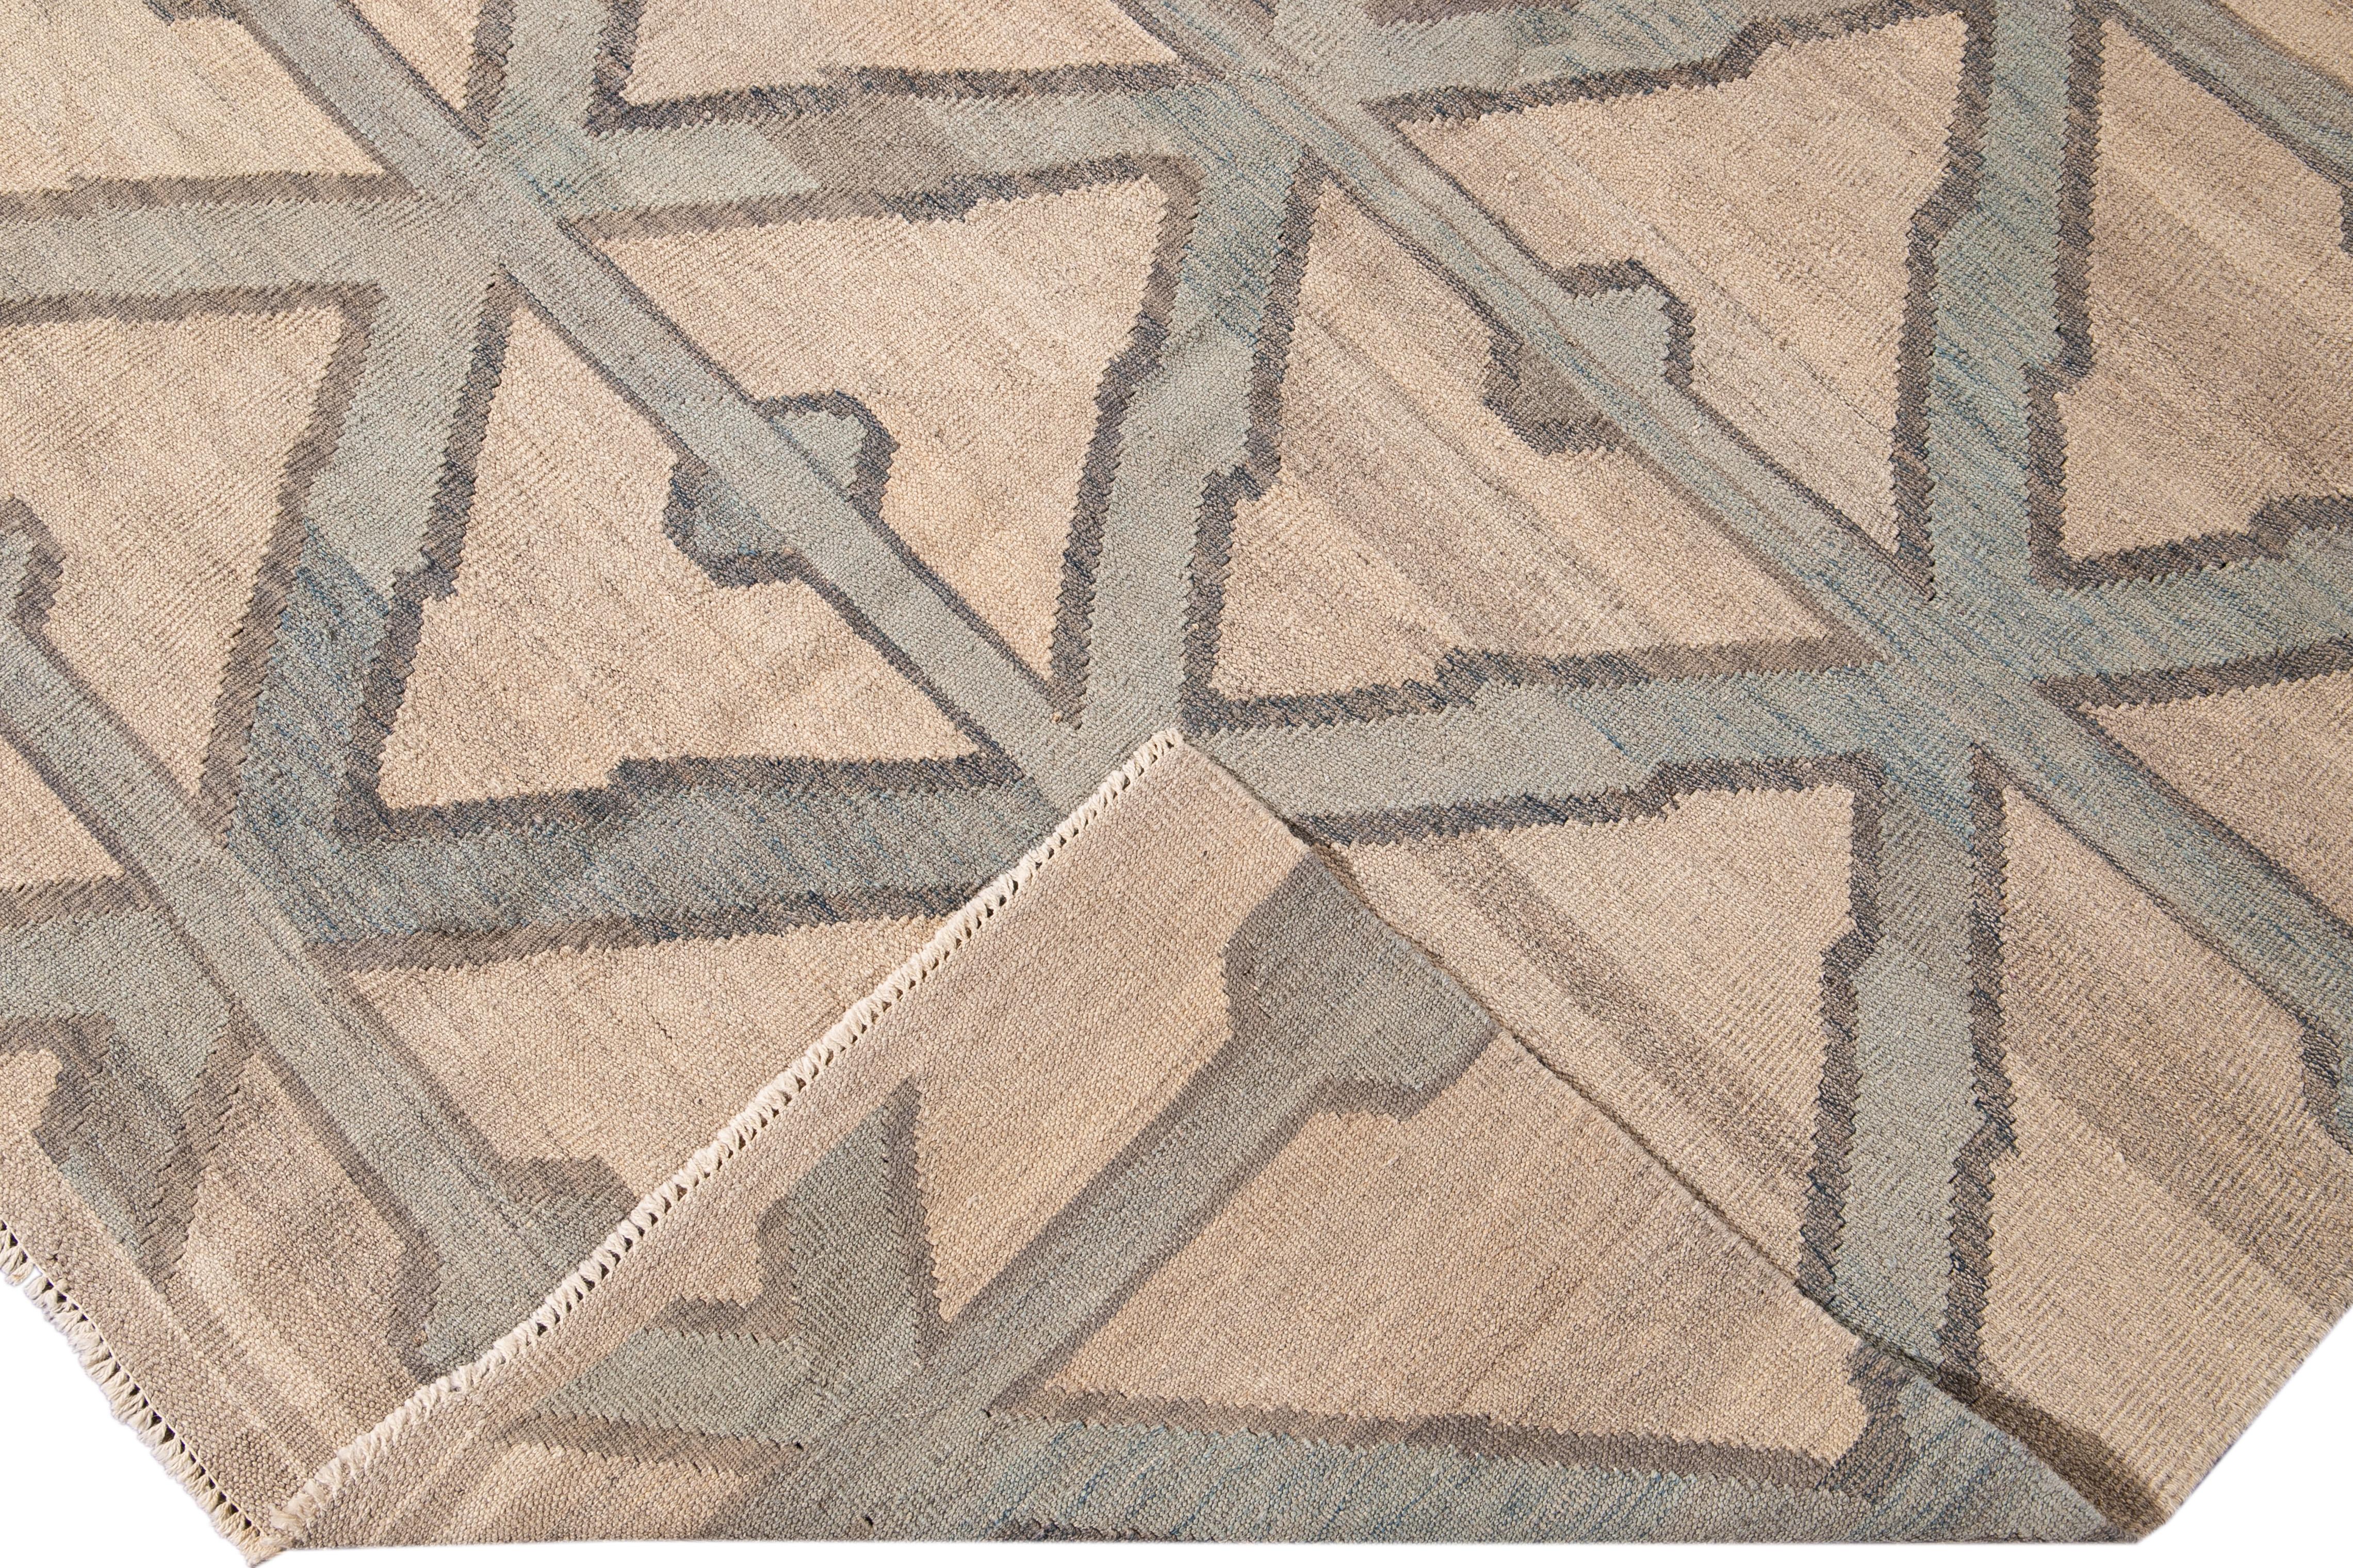 Magnifique tapis moderne Kilim en laine tissée à plat avec un champ beige. Cette œuvre d'art présente des accents verts et gris dans un magnifique motif géométrique en forme de diamant.

Ce tapis mesure : 7'10